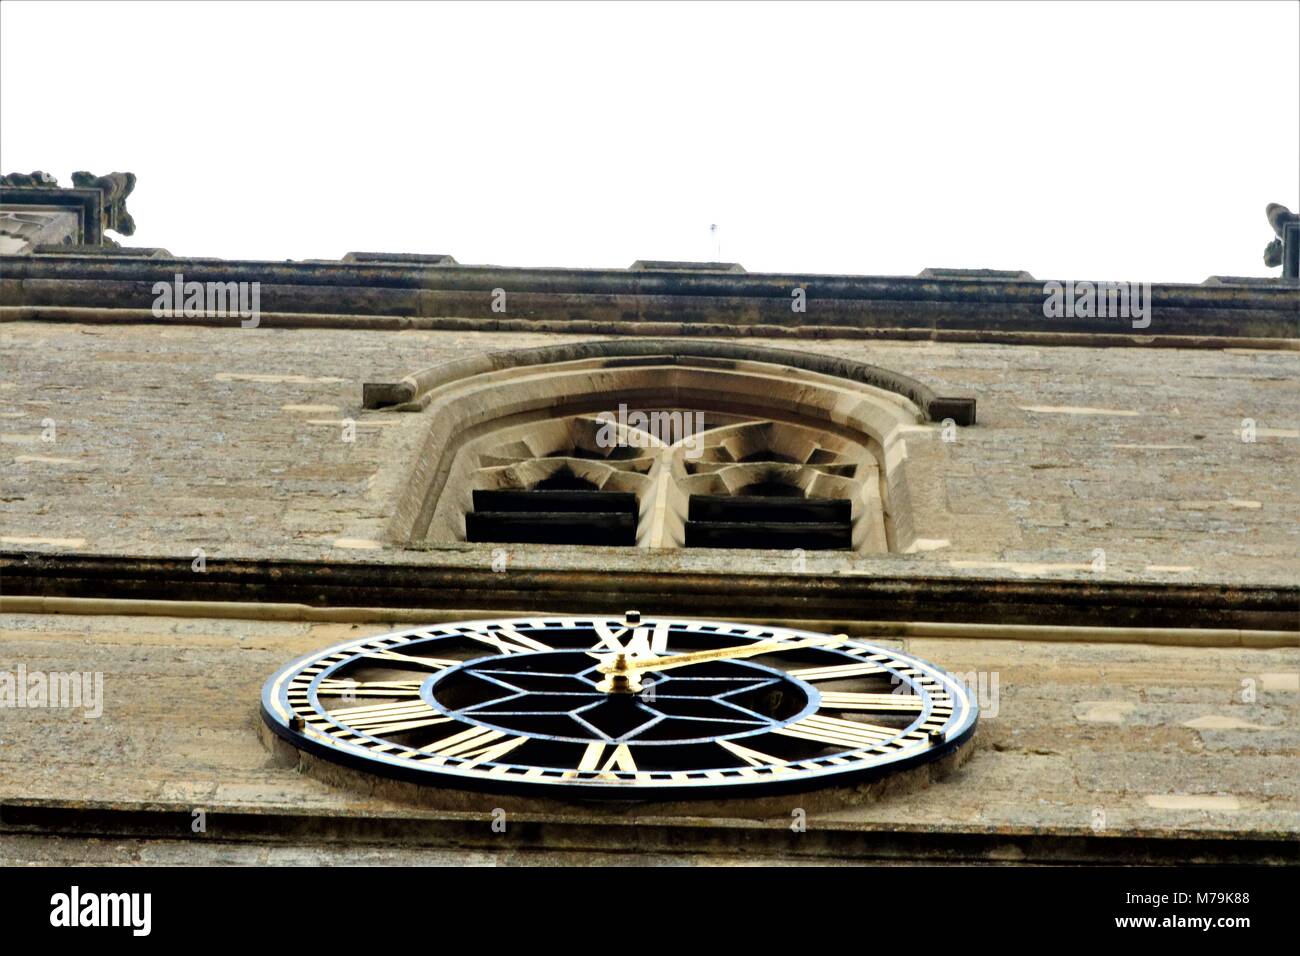 Schöne Kirche in Oxfordshire, UK Stockfoto